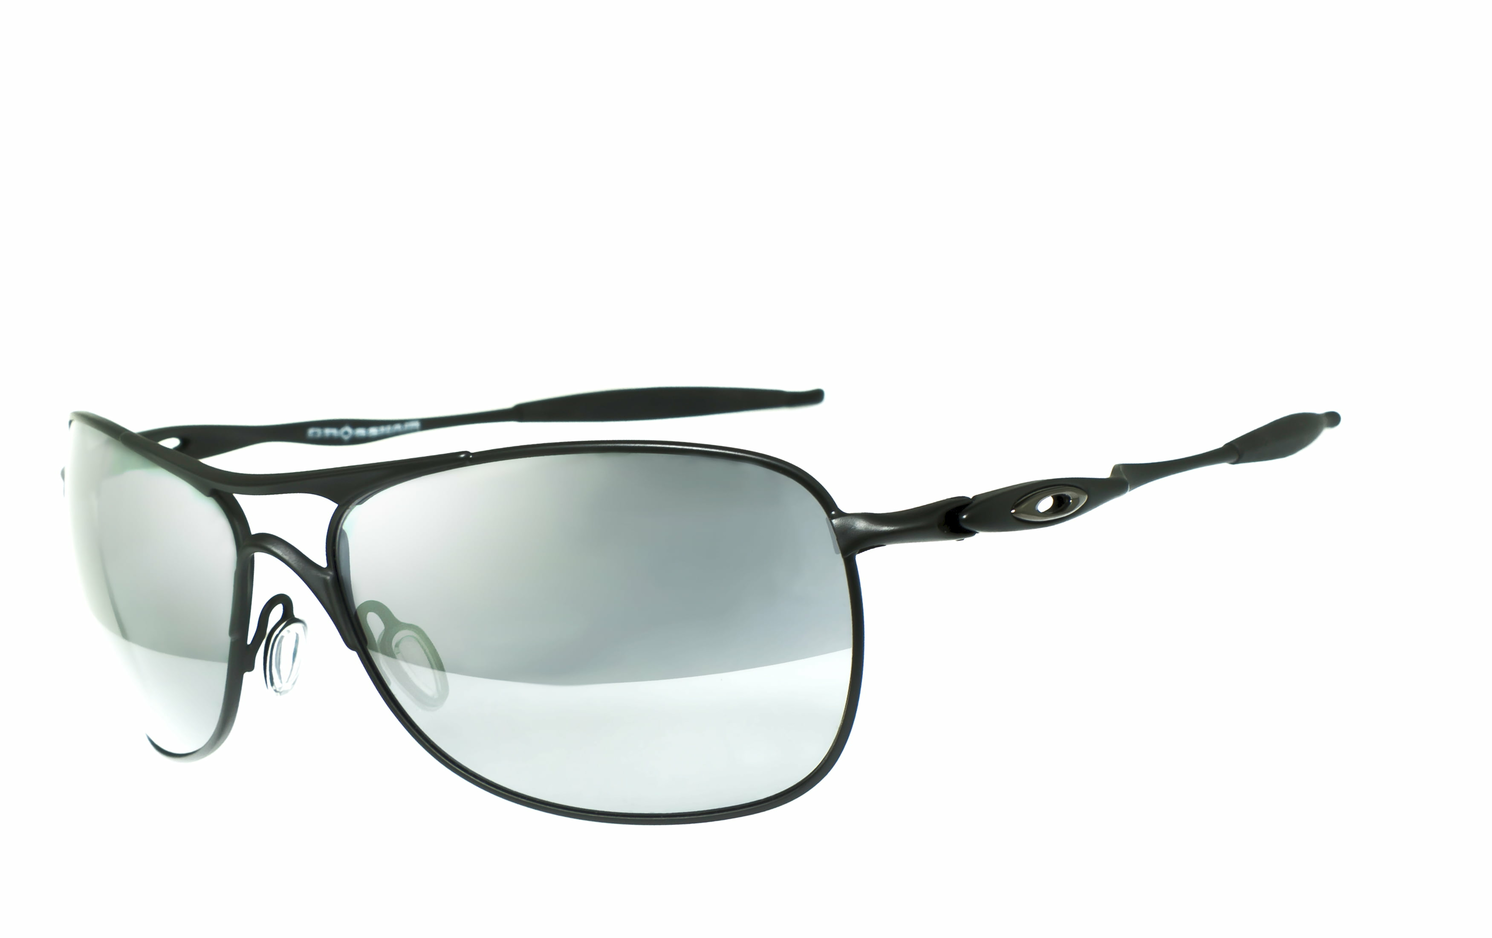 OAKLEY | CROSSHAIR - OO4060  Sportbrille, Fahrradbrille, Sonnenbrille, Bikerbrille, Radbrille, UV400 Schutzfilter